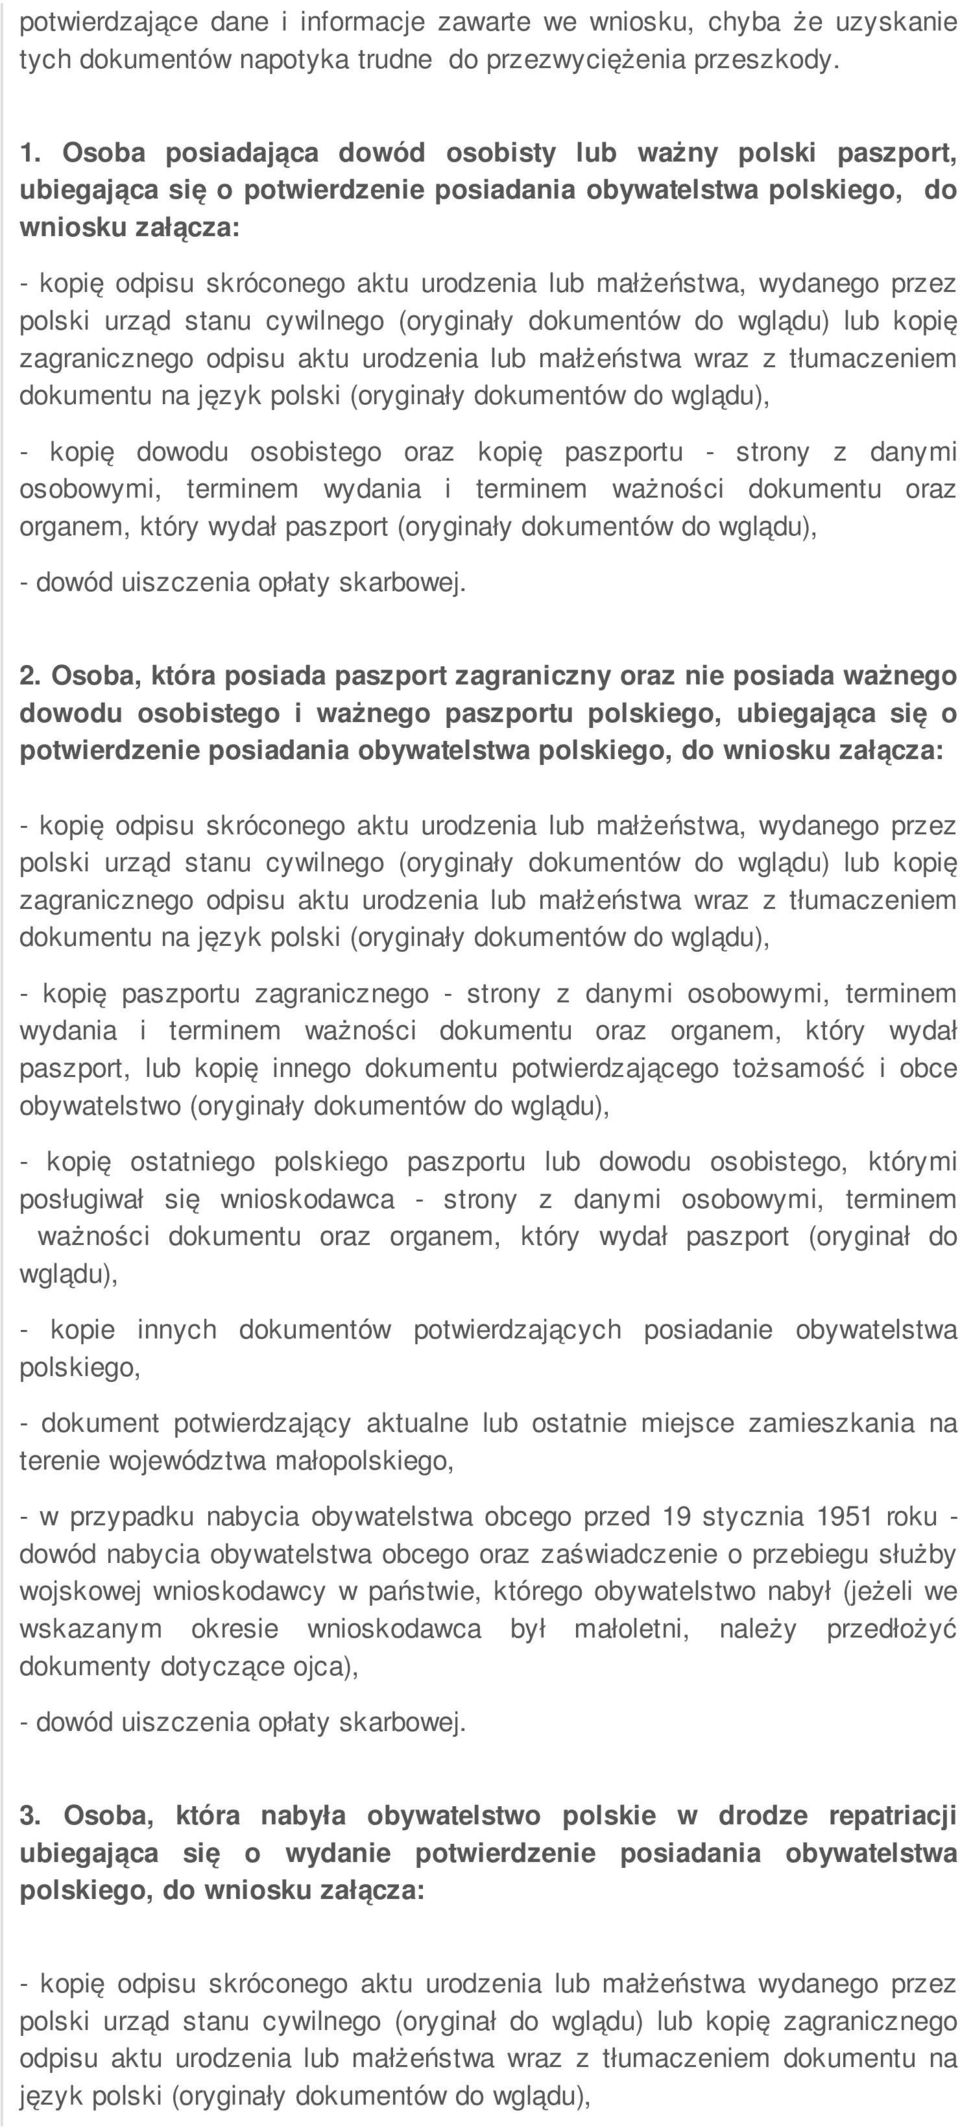 małżeństwa, wydanego przez polski urząd stanu cywilnego (oryginały dokumentów do wglądu) lub kopię zagranicznego odpisu aktu urodzenia lub małżeństwa wraz z tłumaczeniem dokumentu na język polski